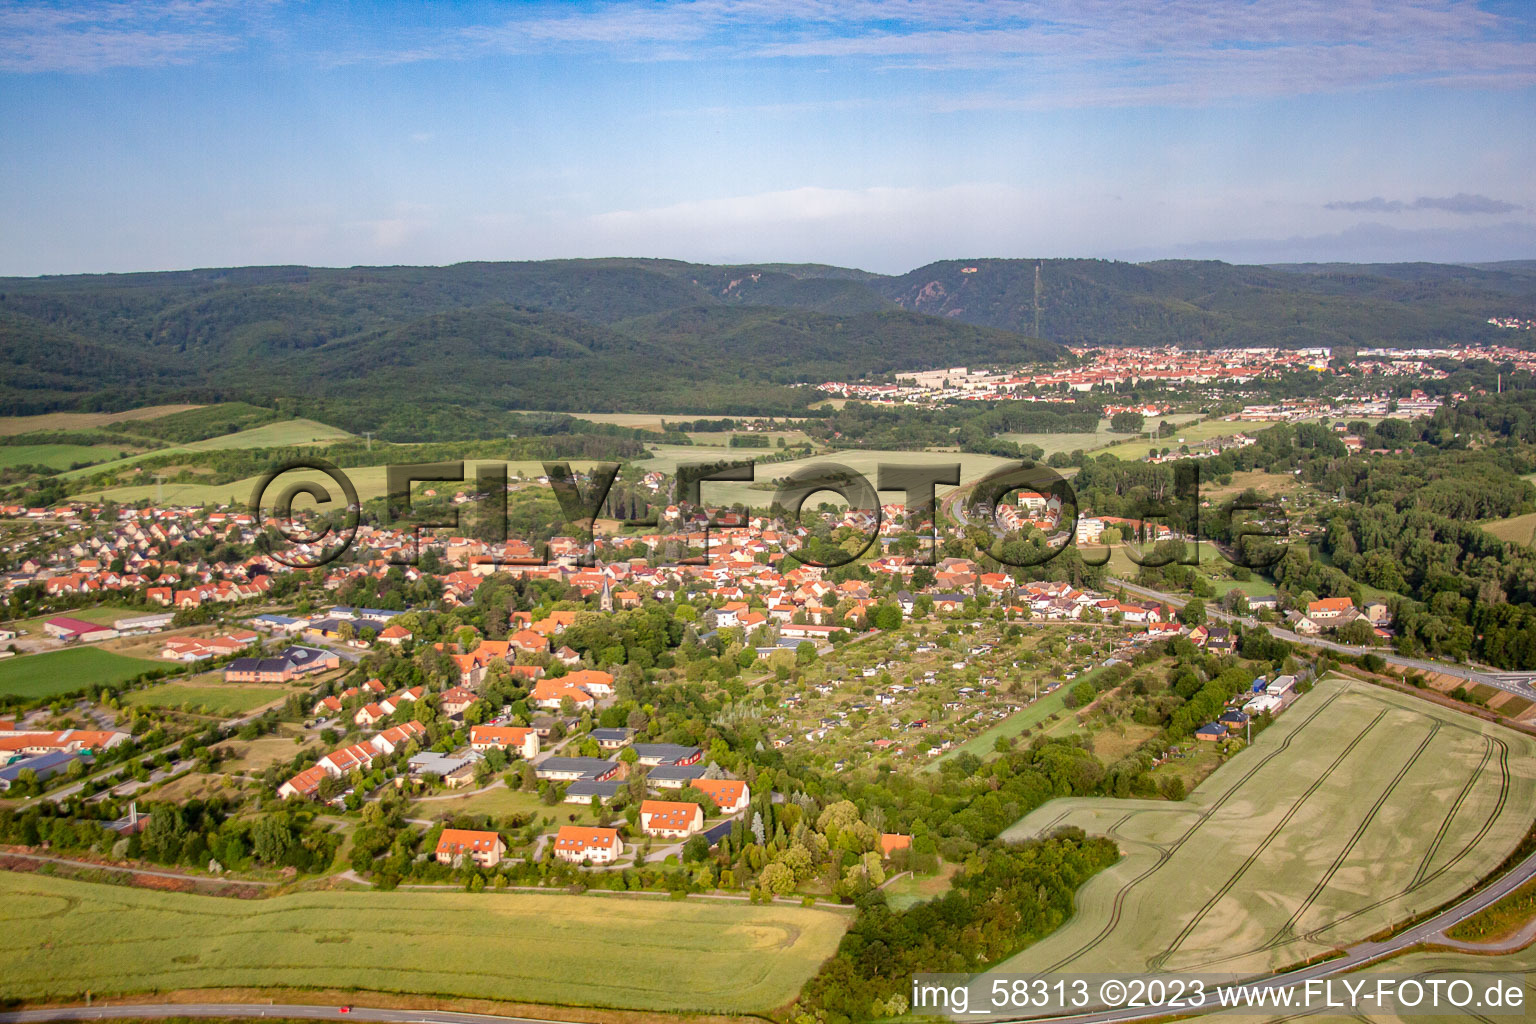 Photographie aérienne de Quartier Neinstedt in Thale dans le département Saxe-Anhalt, Allemagne